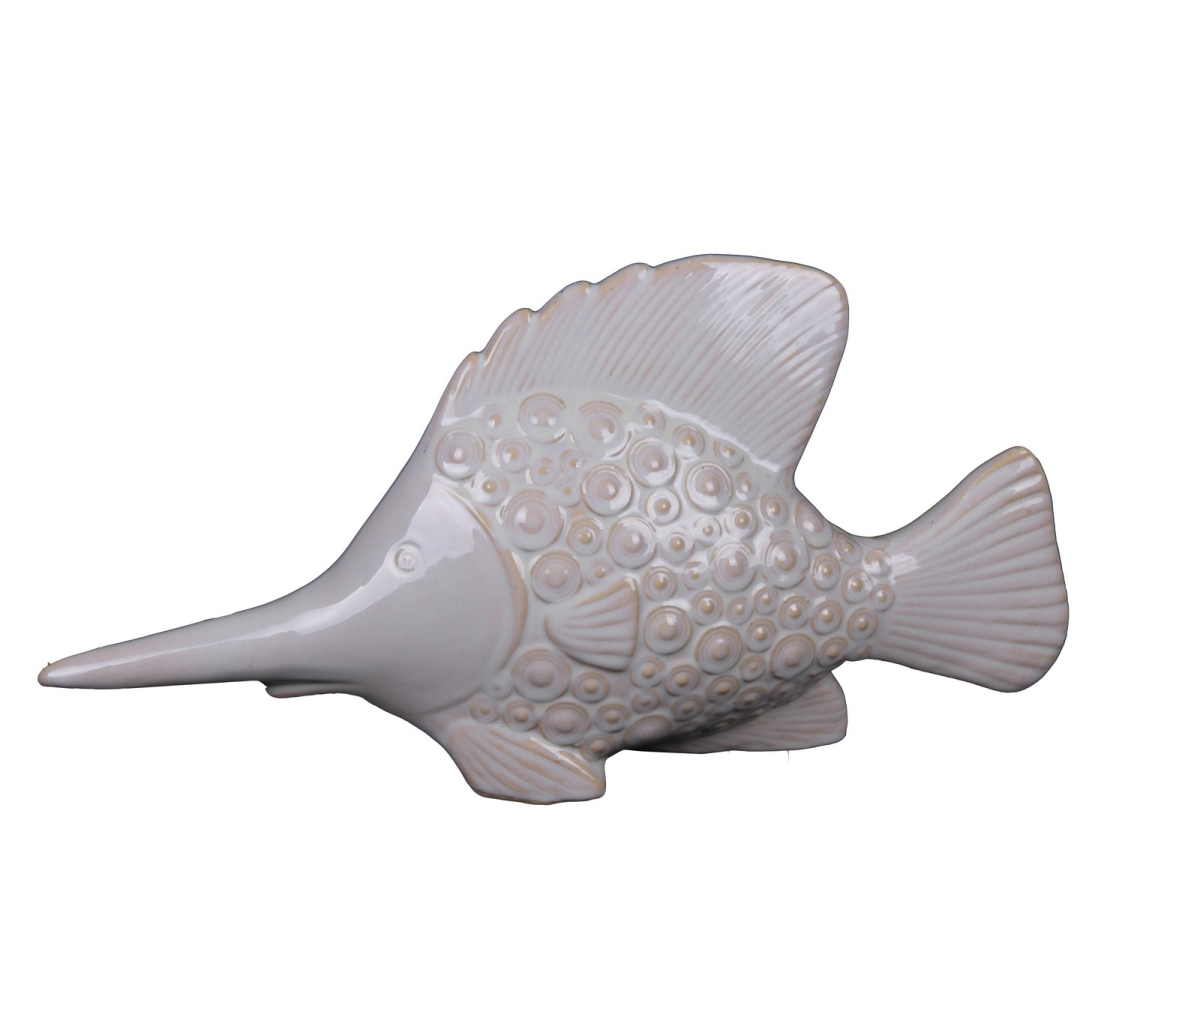 77153 18 X 4.5 X 9 In. Ceramic Sword Fish Statue, Large